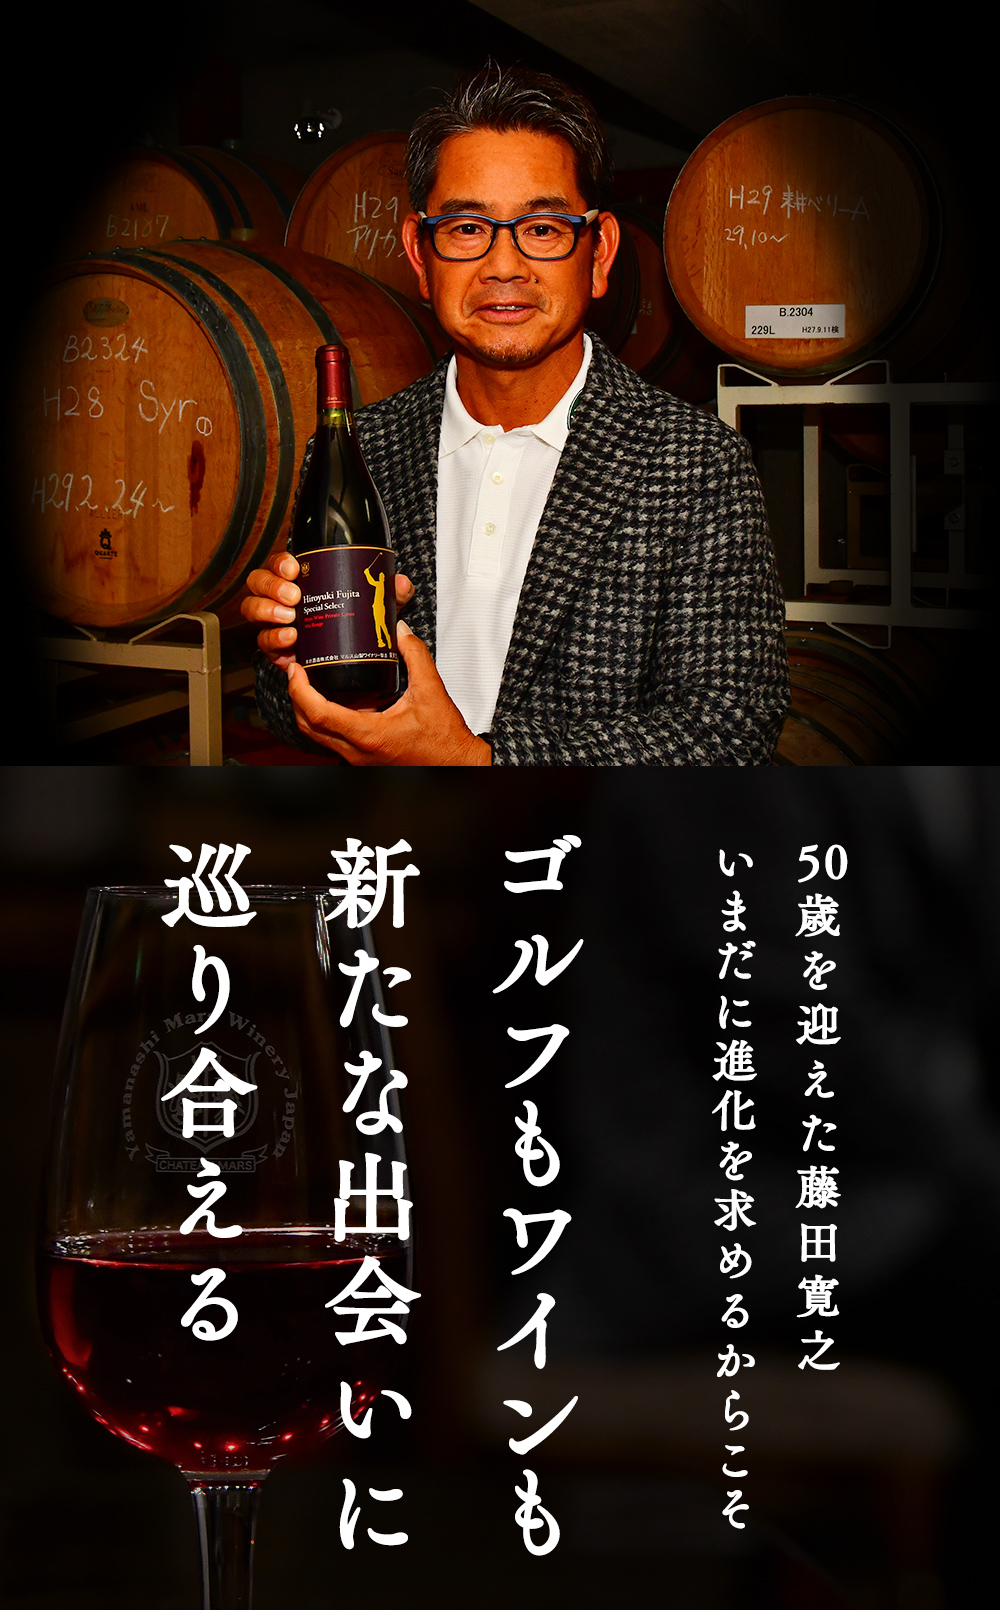 50歳を迎えた藤田寛之 いまだに進化を求めるからこそゴルフもワインも新たな出会いに巡り合える